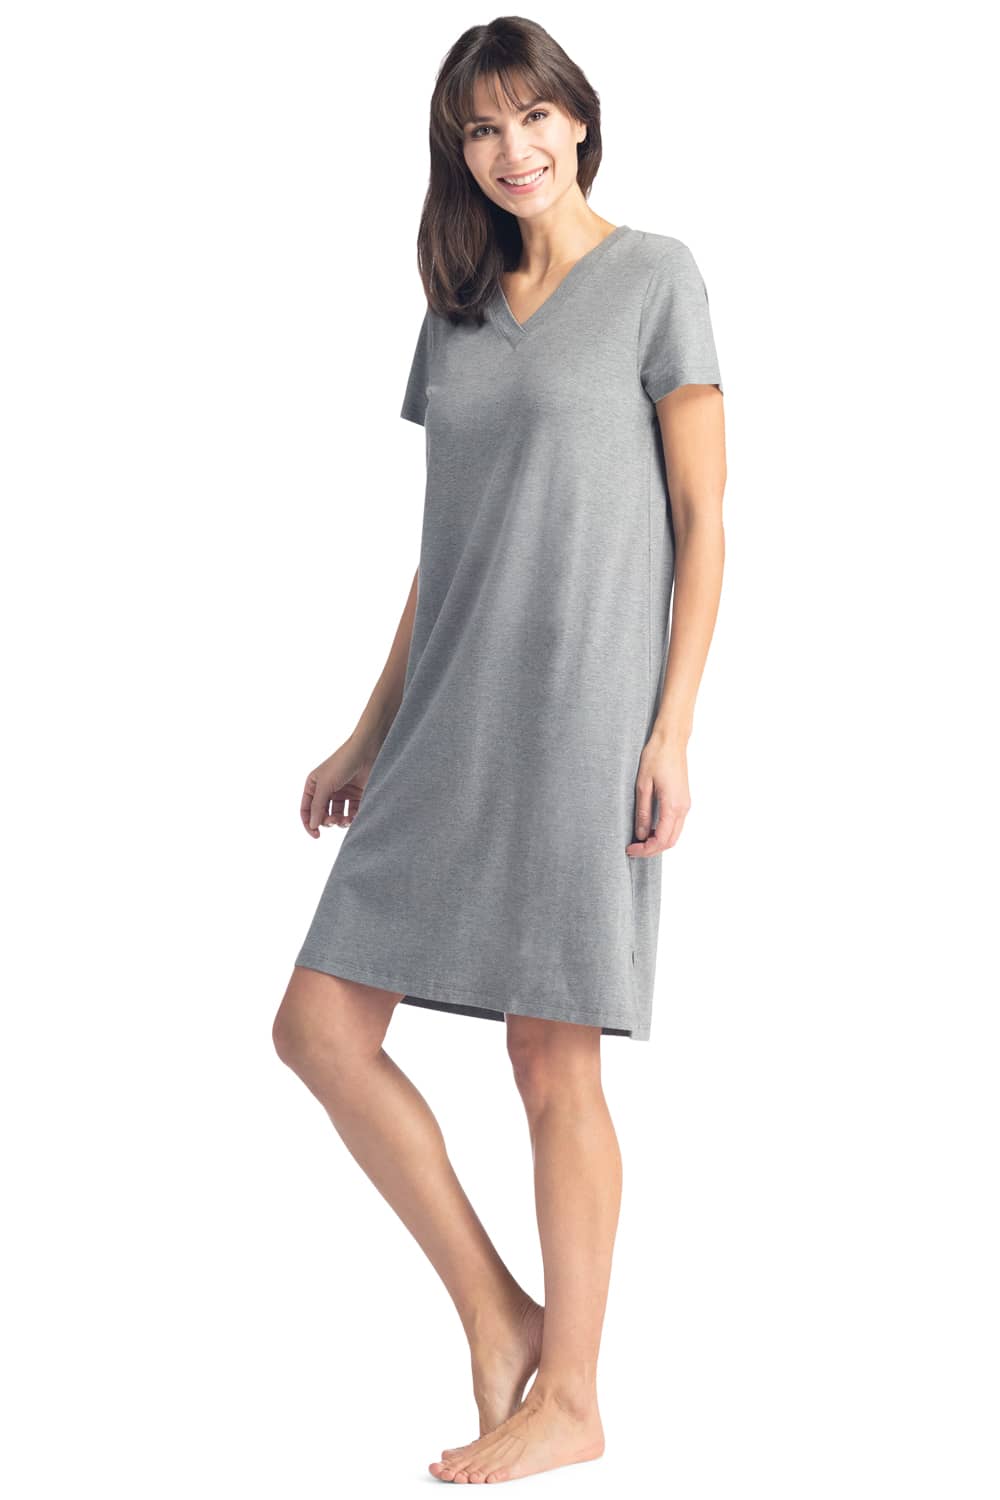 Shop Fashion Women's Pajamas 100% Cotton Nightgowns For Women